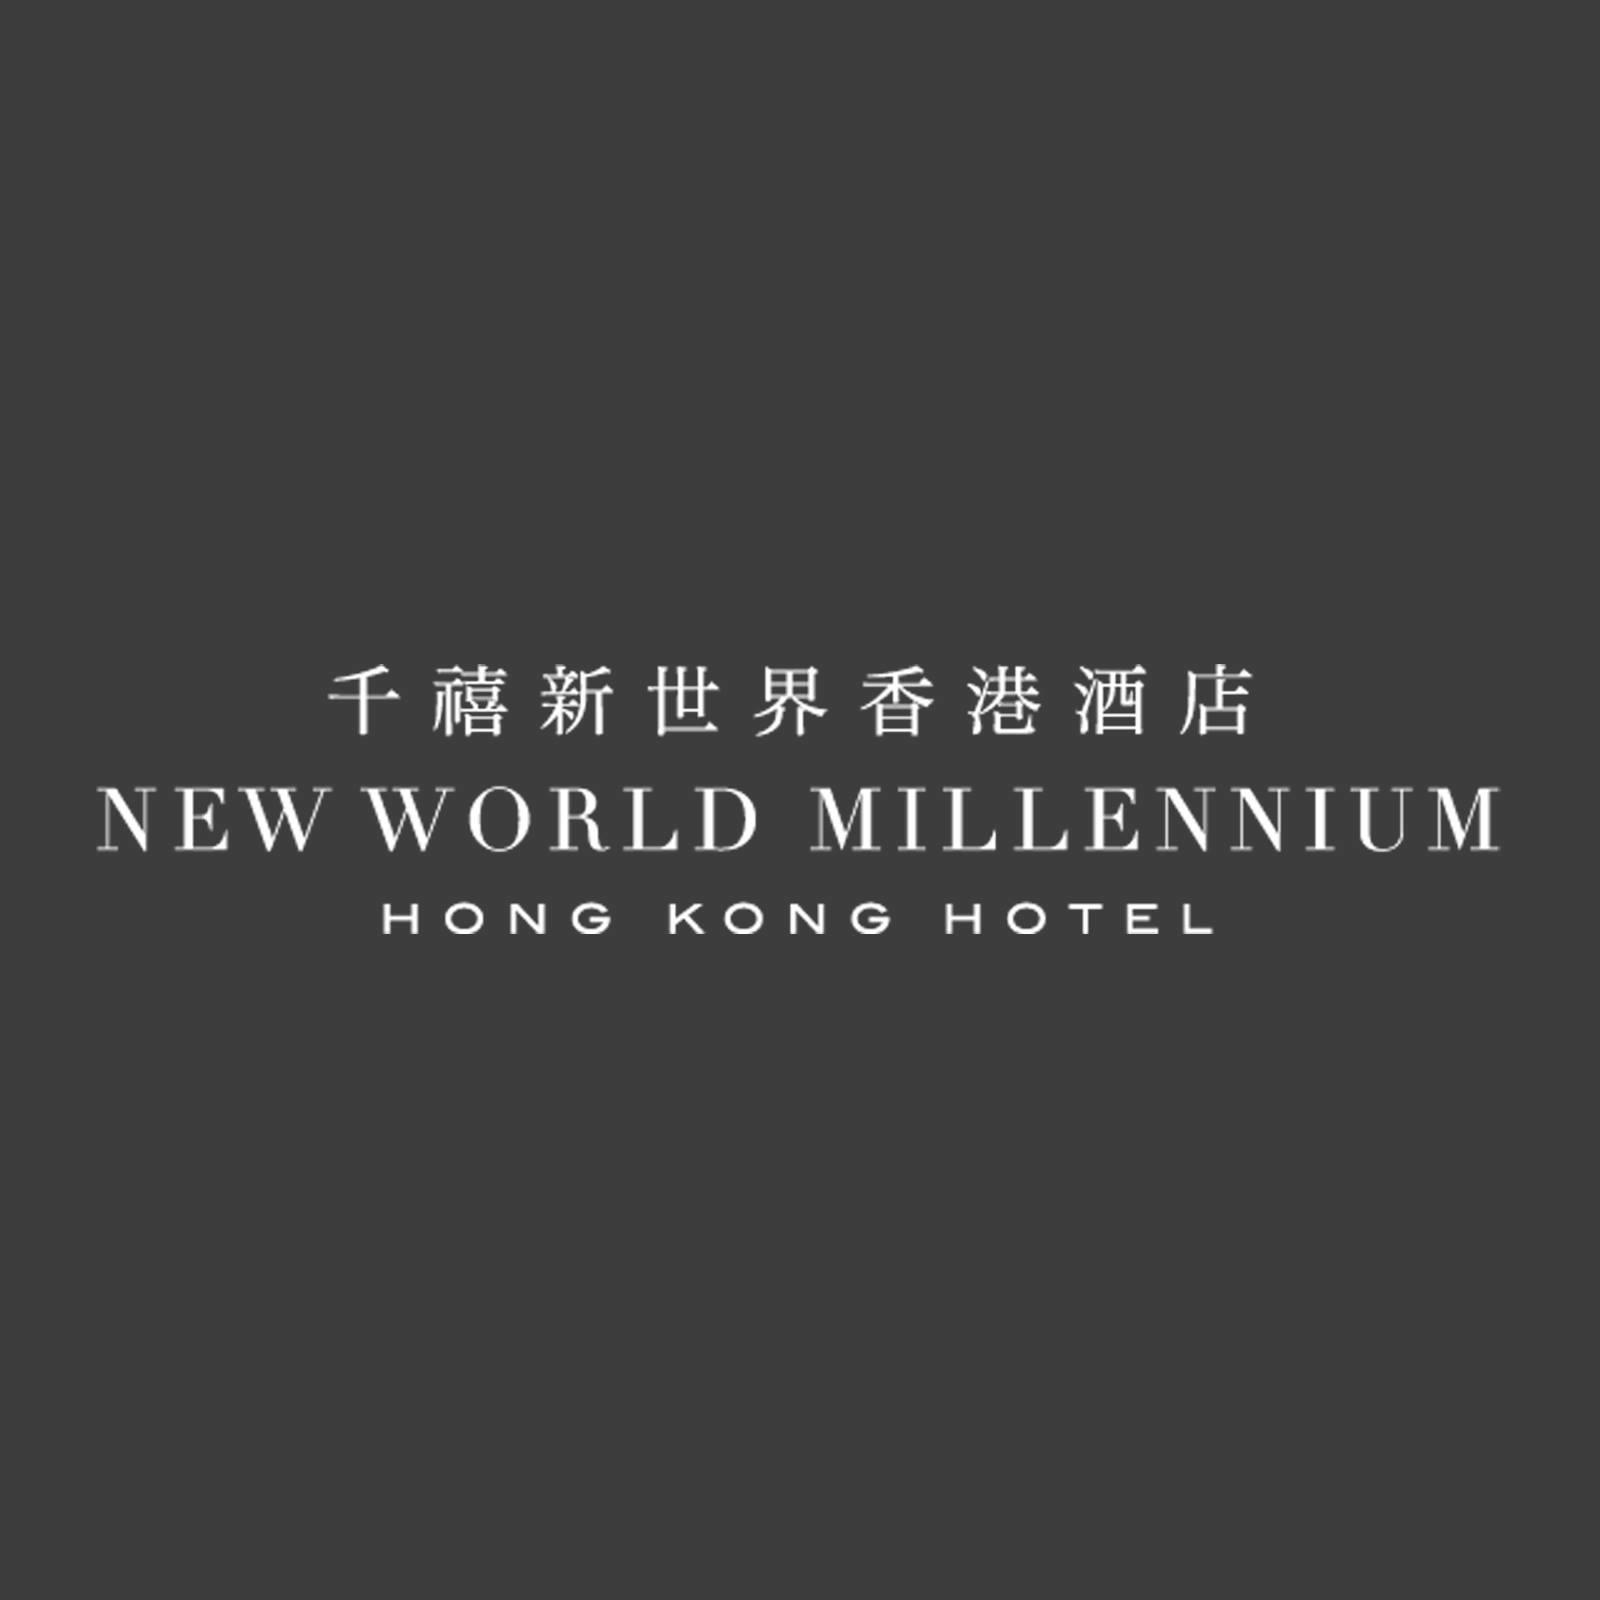 New World Millennium Hong Kong Hotel Logo